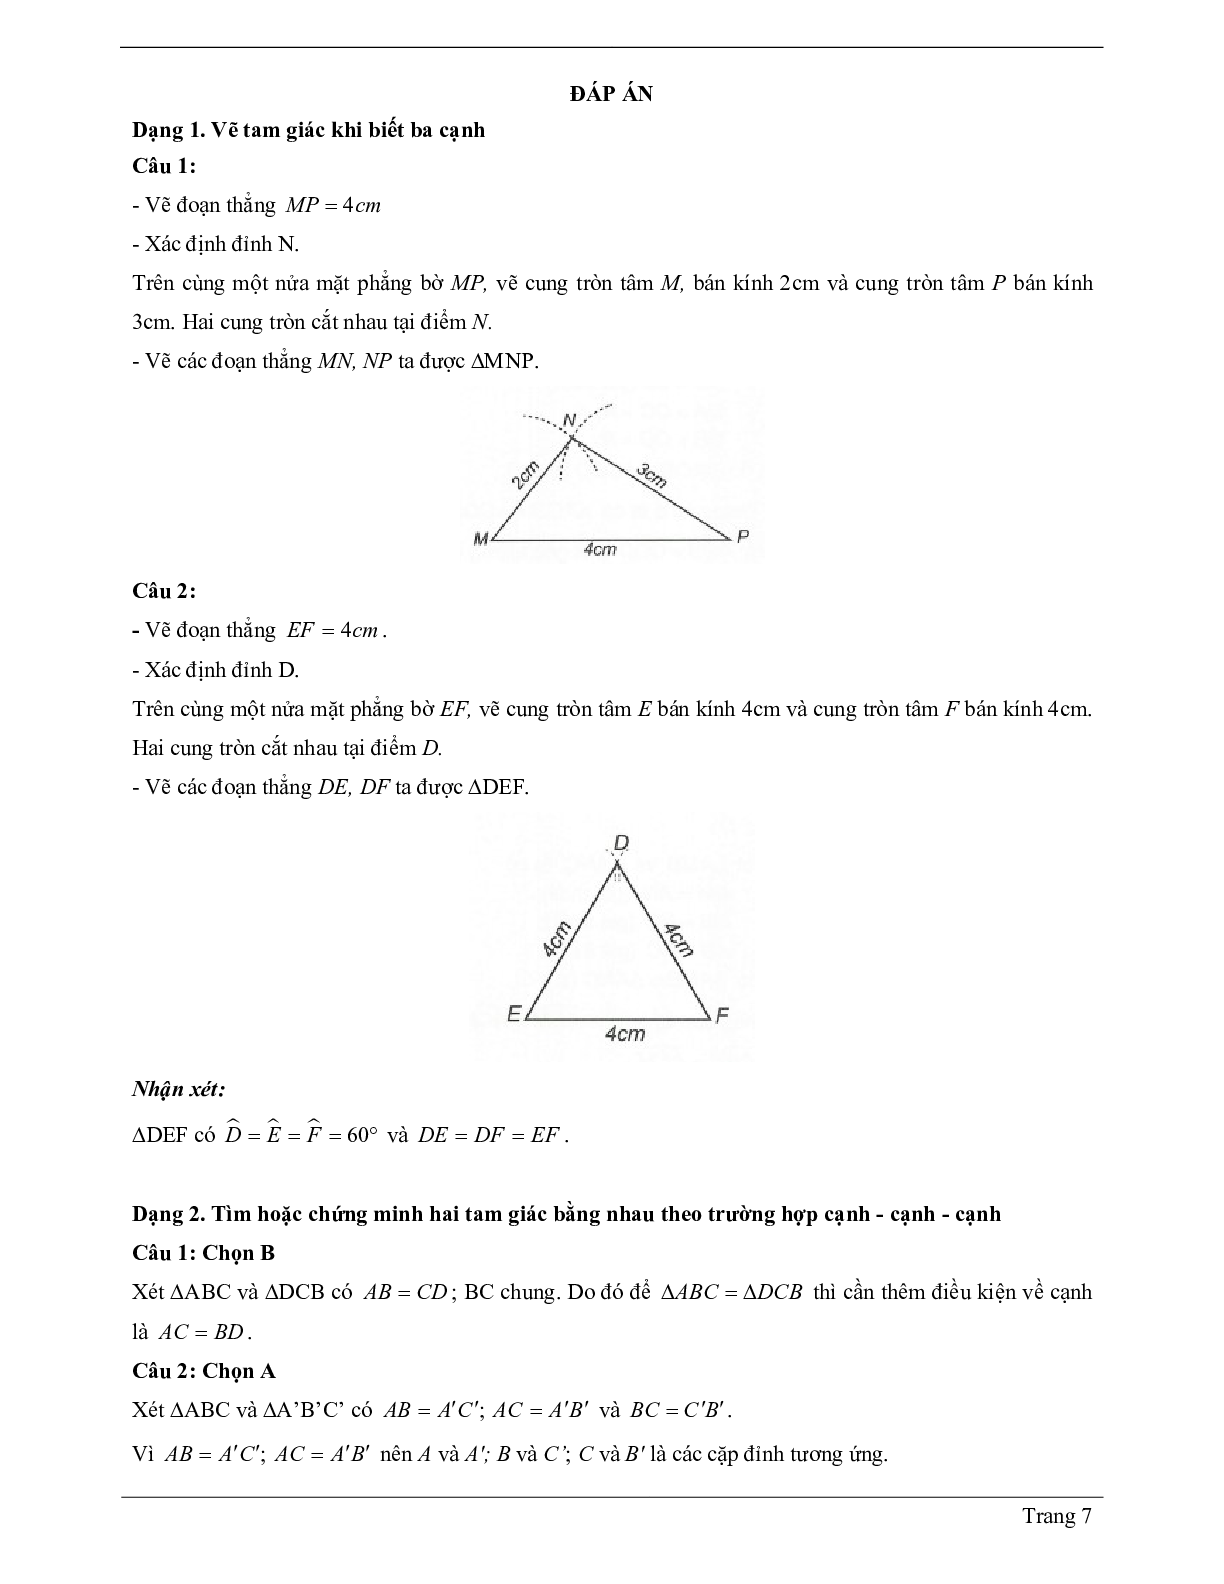 Lý thuyết Toán 7 có đáp án: Trường hợp bằng nhau thứ nhất của tam giác: cạnh - cạnh - canh (c.c.c) (trang 7)